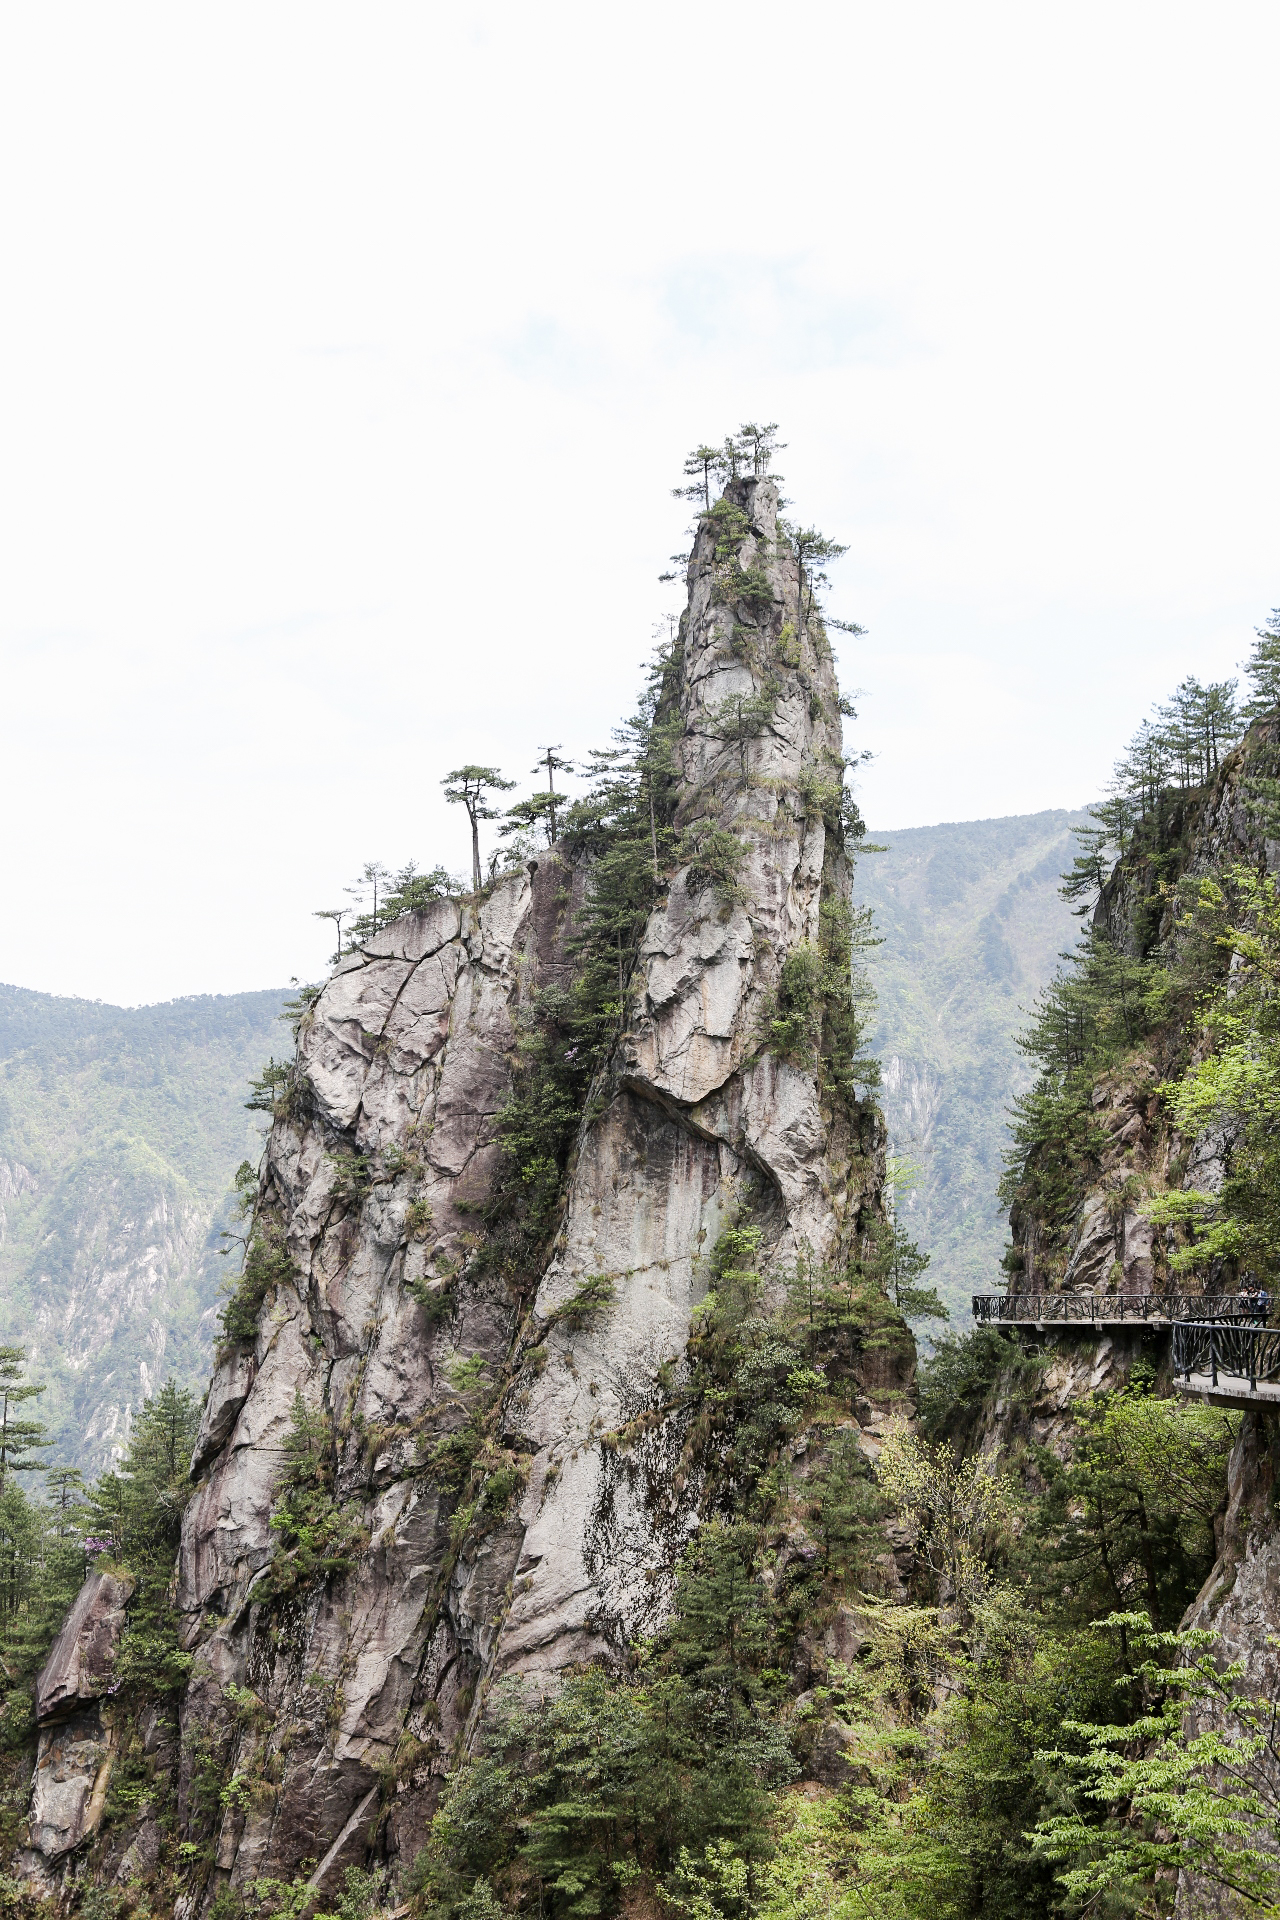 【携程攻略】杭州大明山景区景点,到临安就是为了爬大明山。推荐索道缆车上山，徒步下山。悬空栈道是亮…